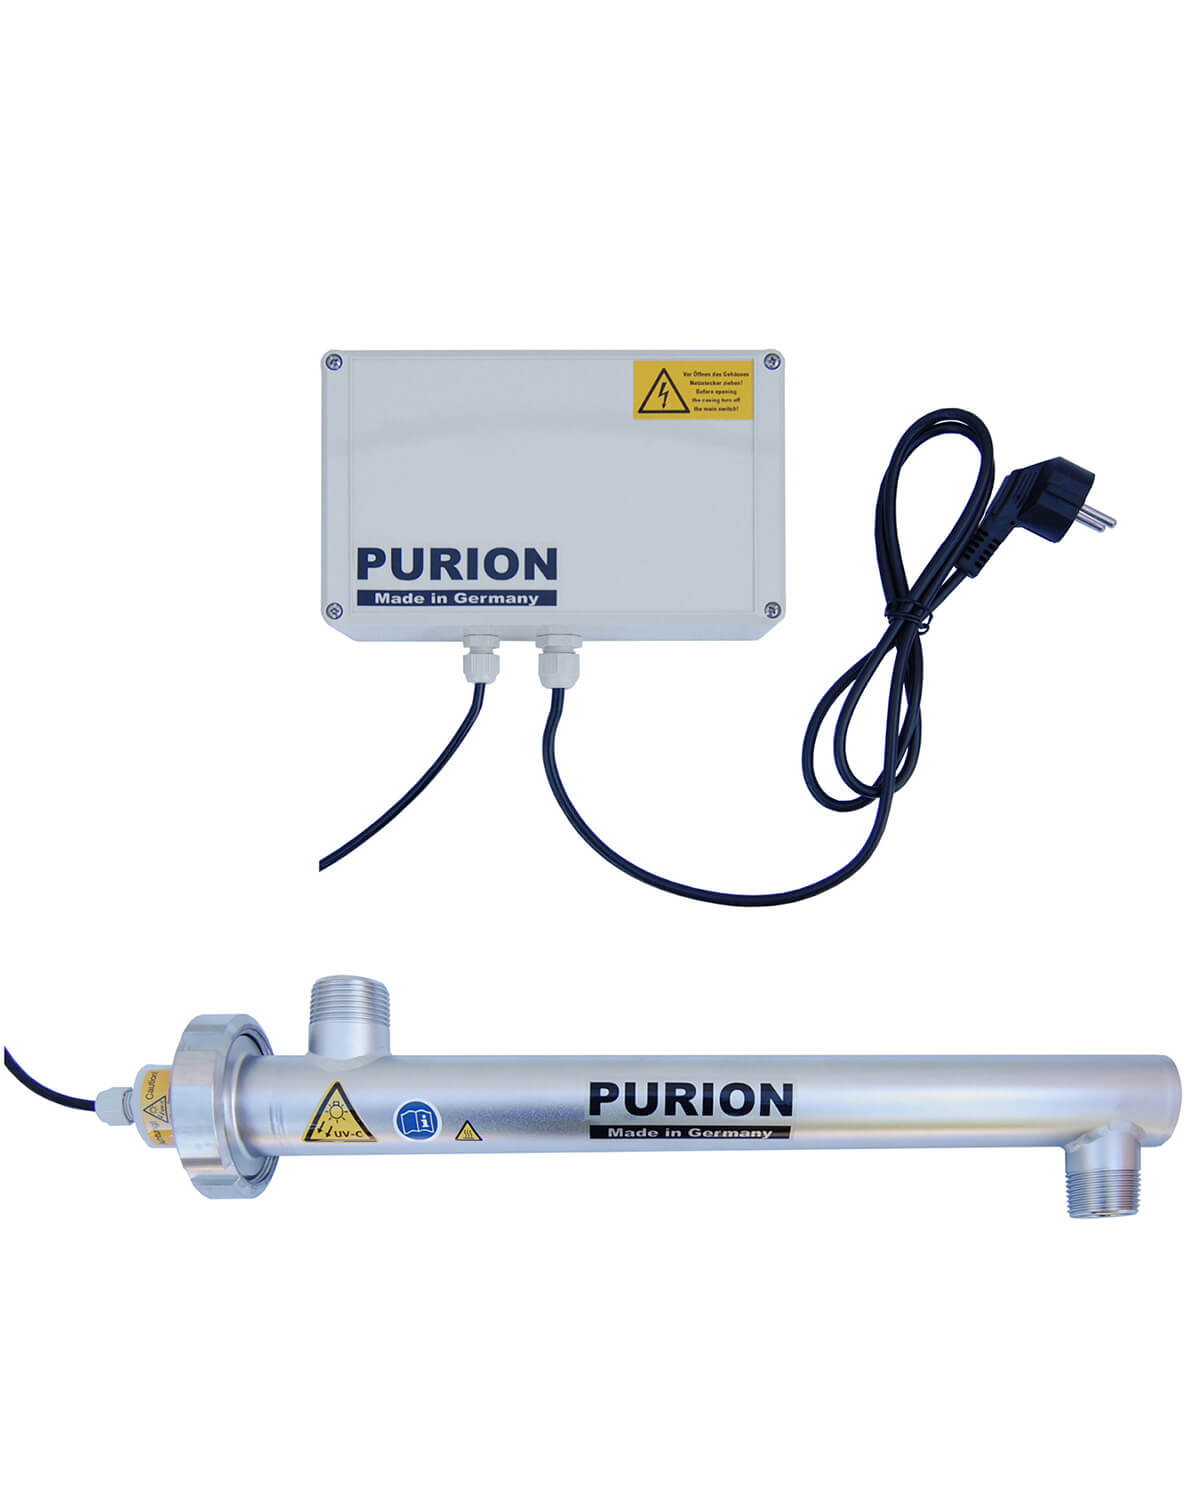 Die PURION GmbH bietet mit ihrem Produkt, dem PURION 1000 H Basic, eine innovative Lösung zur effizienten UV-C-Desinfektion, die eine hohe Legionellenvernichtung gewährleistet und gleichzeitig stromsparend ist.